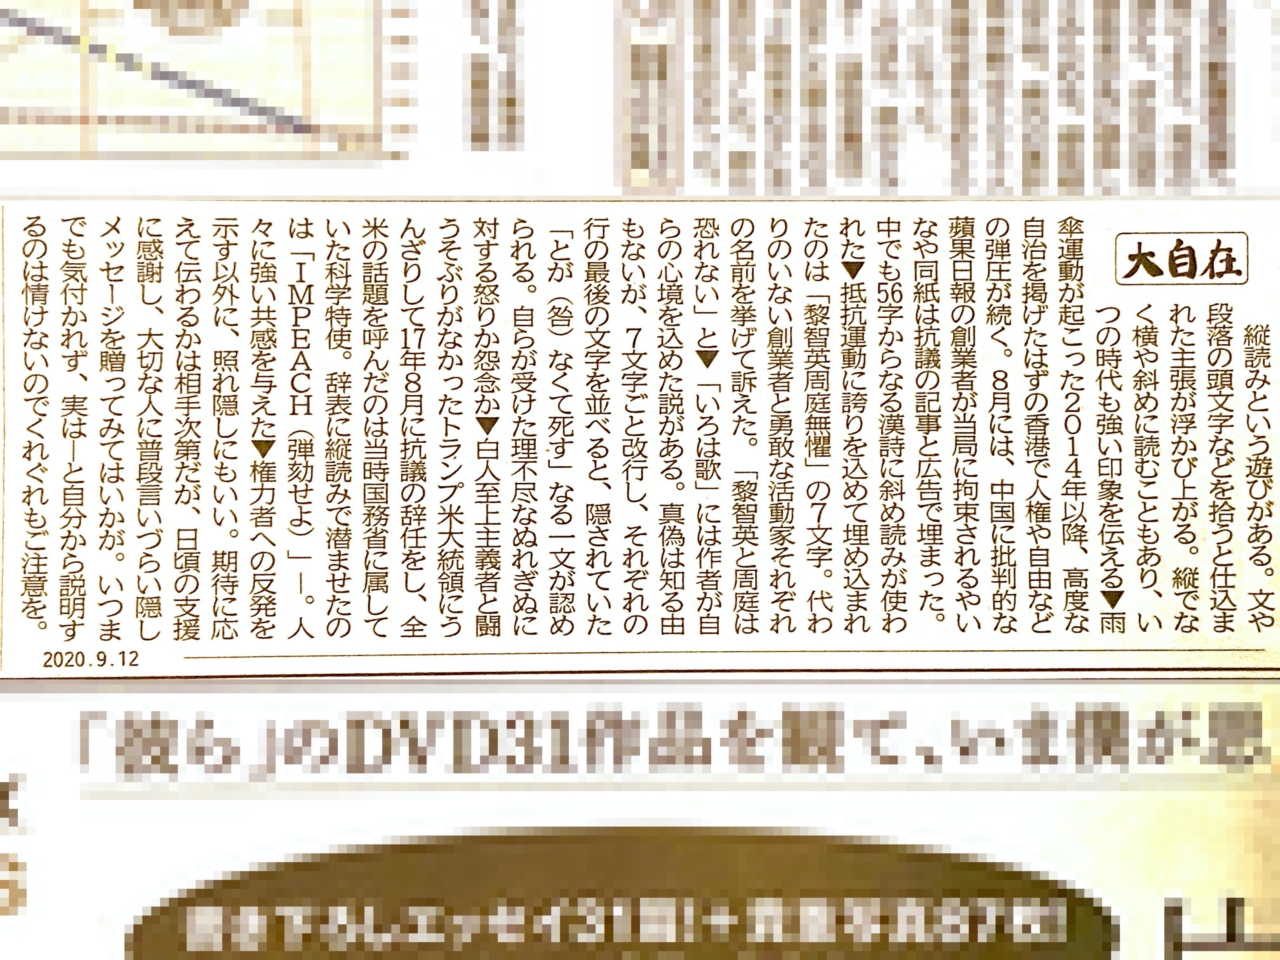 記者の本気 縦読みをテーマにした静岡新聞のコラムの完成度がすごい 静岡新聞9 12 浜松つーしん